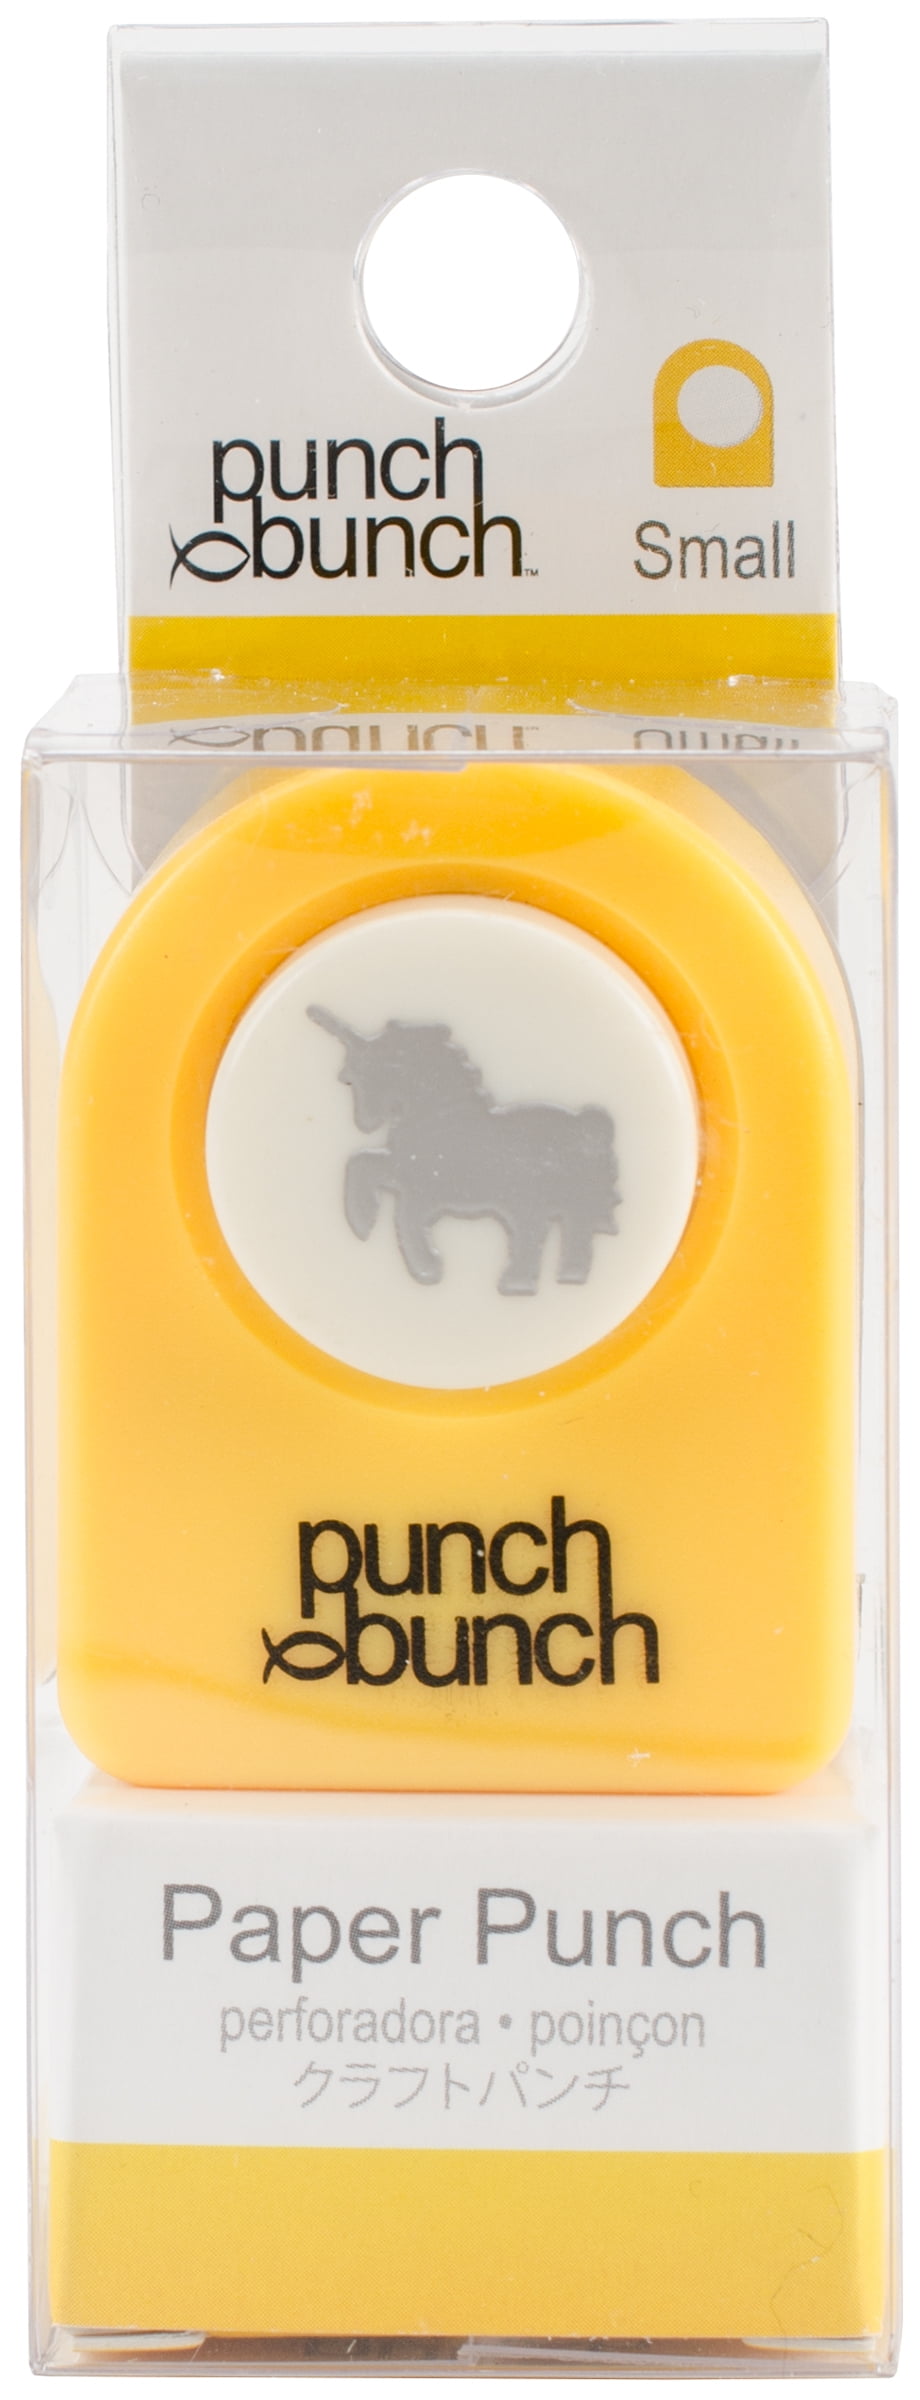 Punch Bunch Small Punch Unicorn